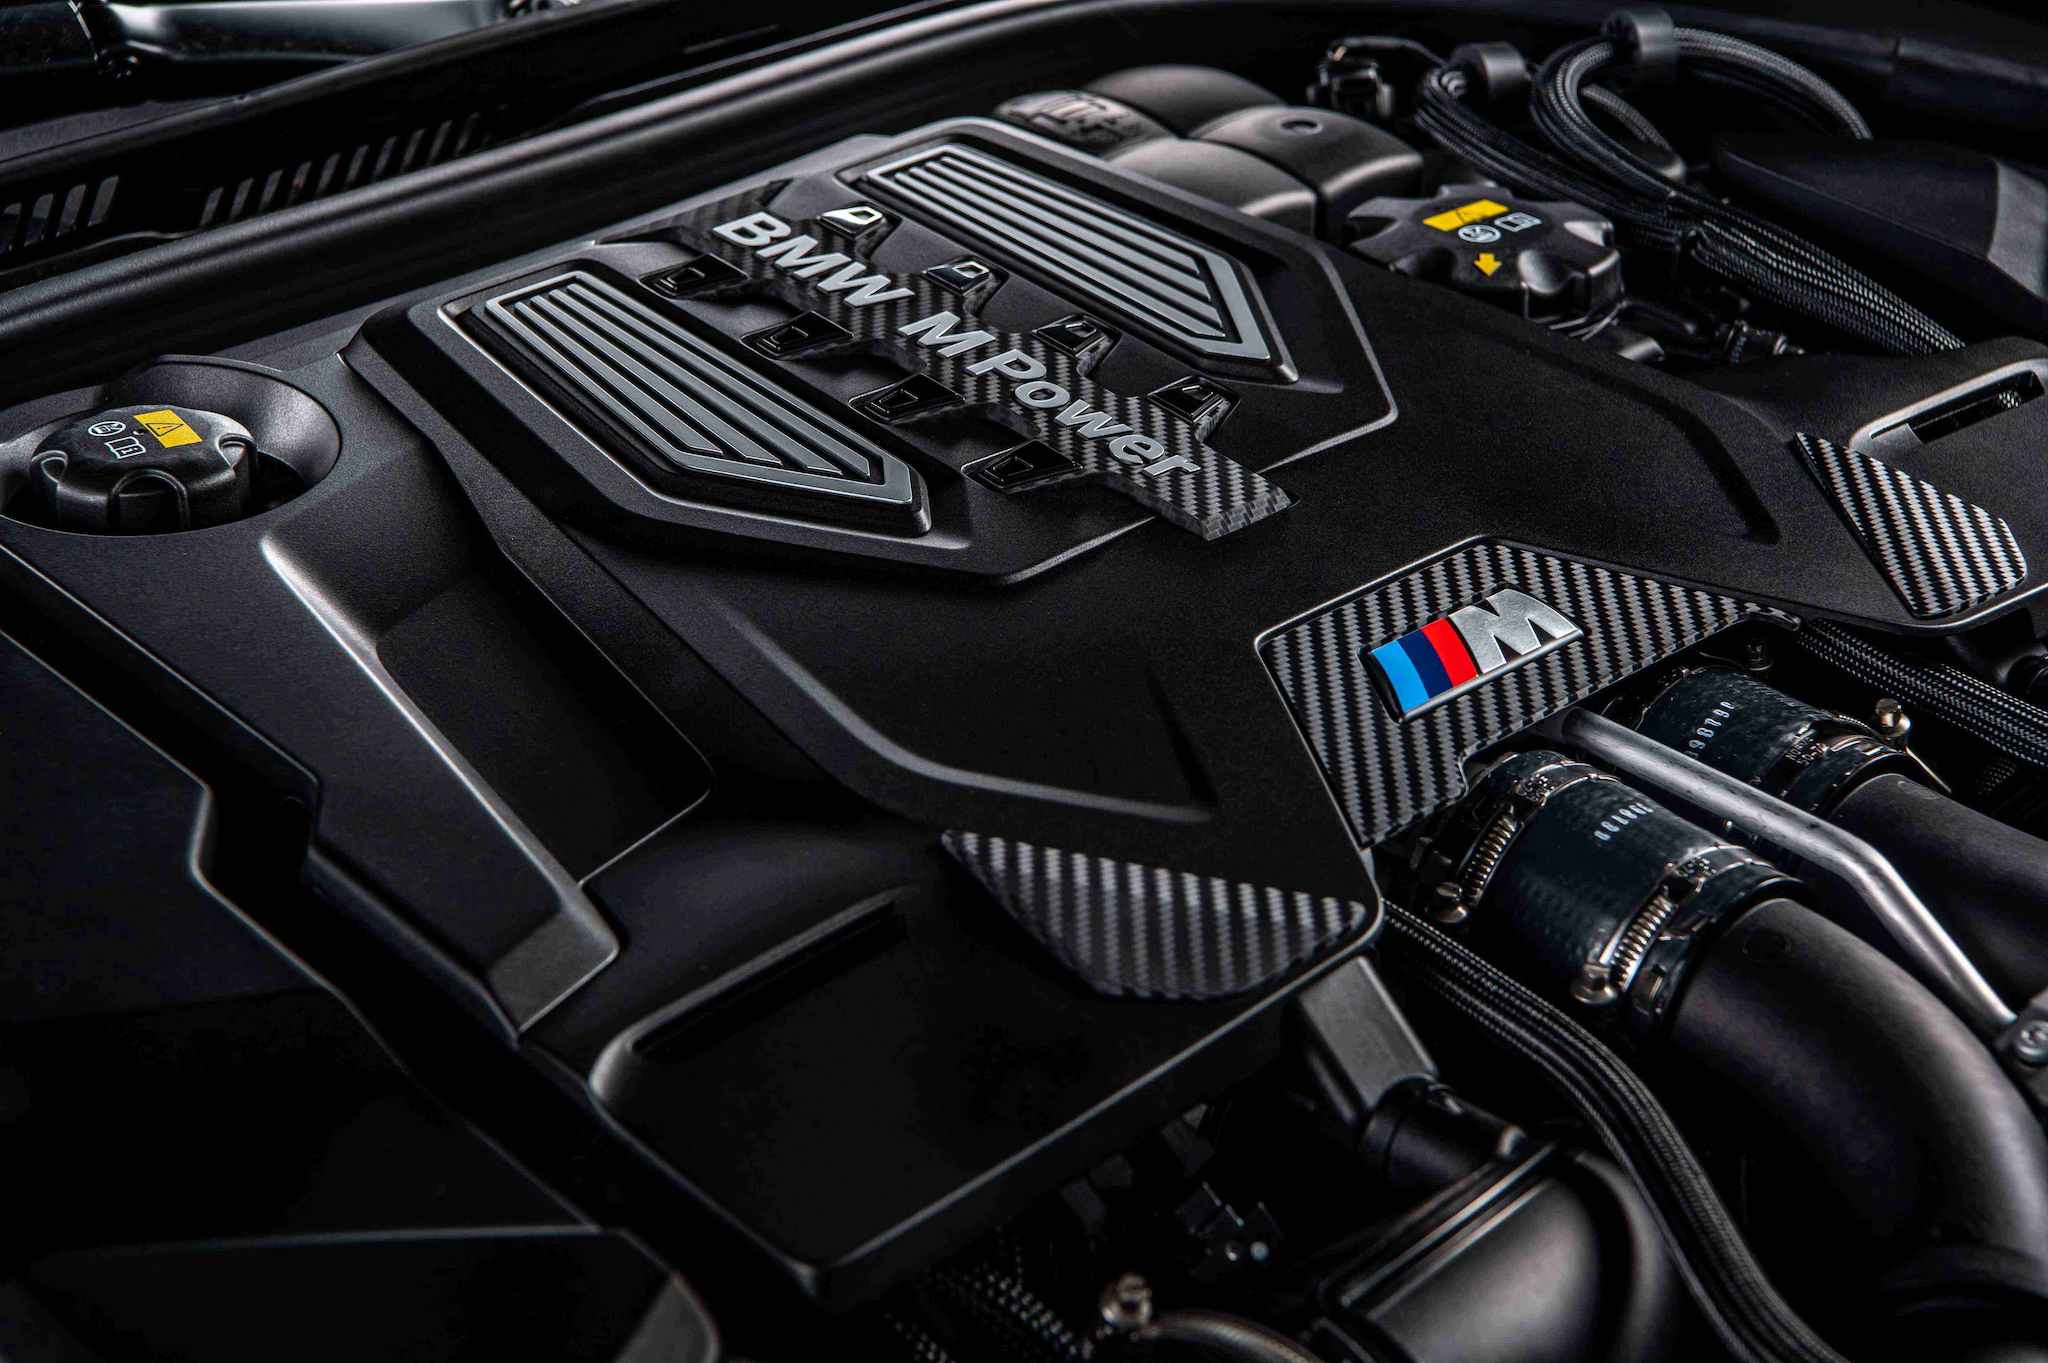 全新 BMW M5 搭載 M TwinPower Turbo S63 4.4 升 V 型 8 汽缸雙渦輪雙渦流汽油引擎，最大馬力達 600 匹德制馬力與 750 牛頓米的強勁扭力輸出。